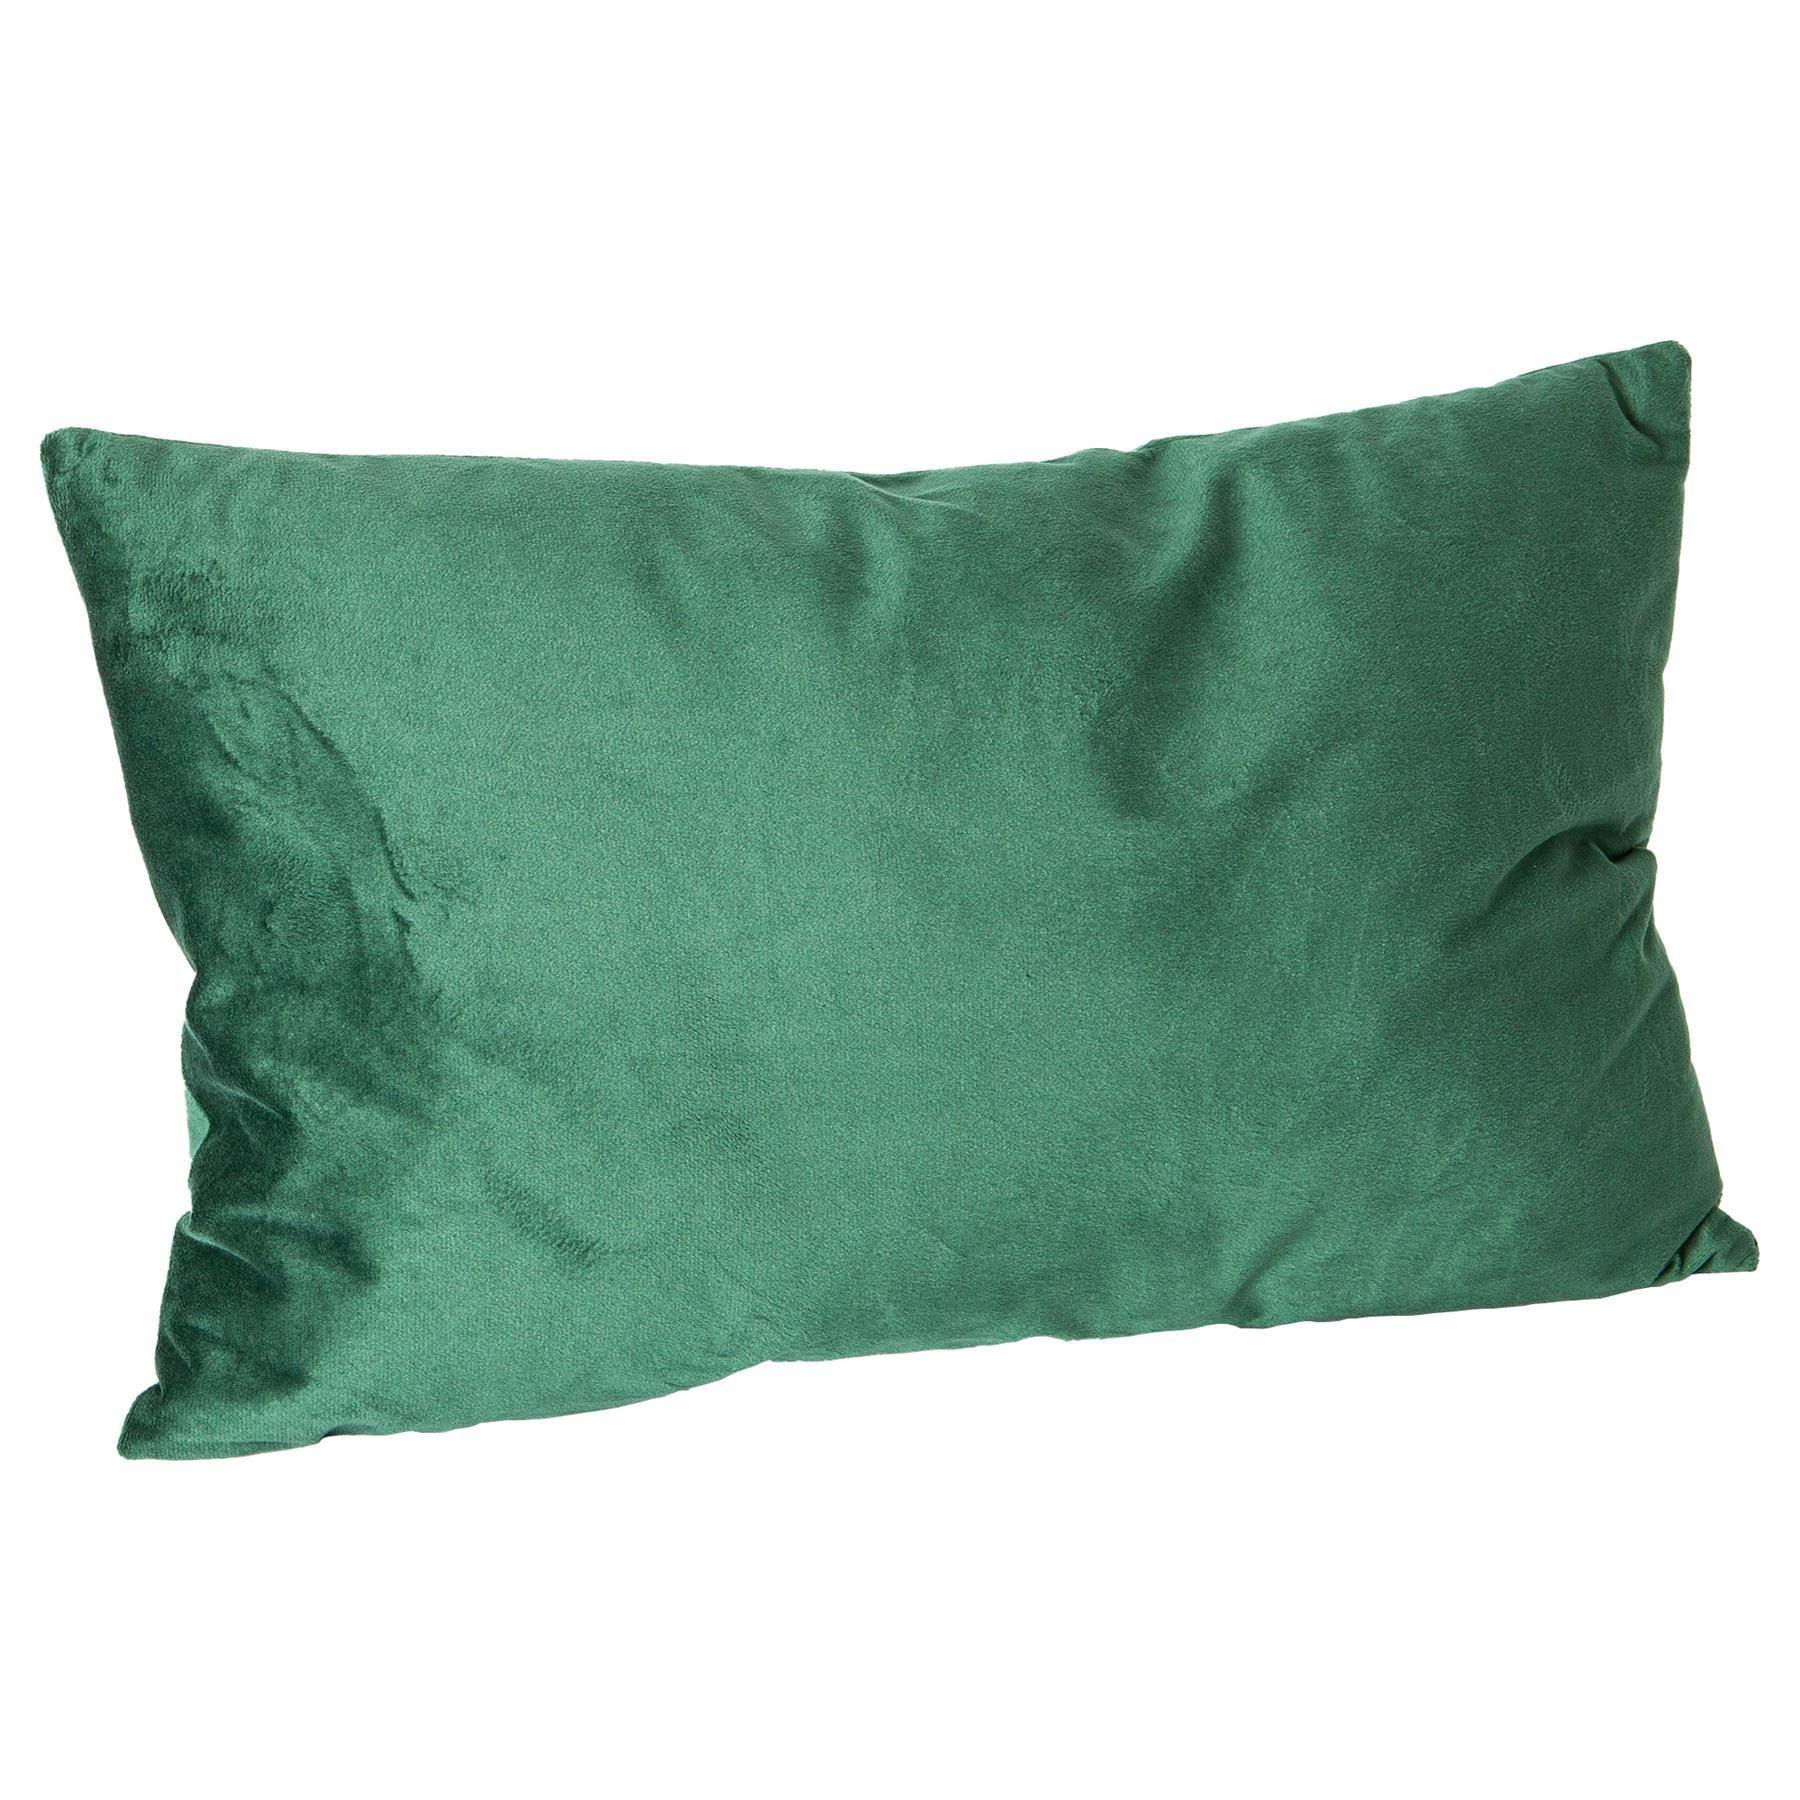 Rectangle Velvet Cushion - 60cm x 40cm - Pack of 1 - image 1